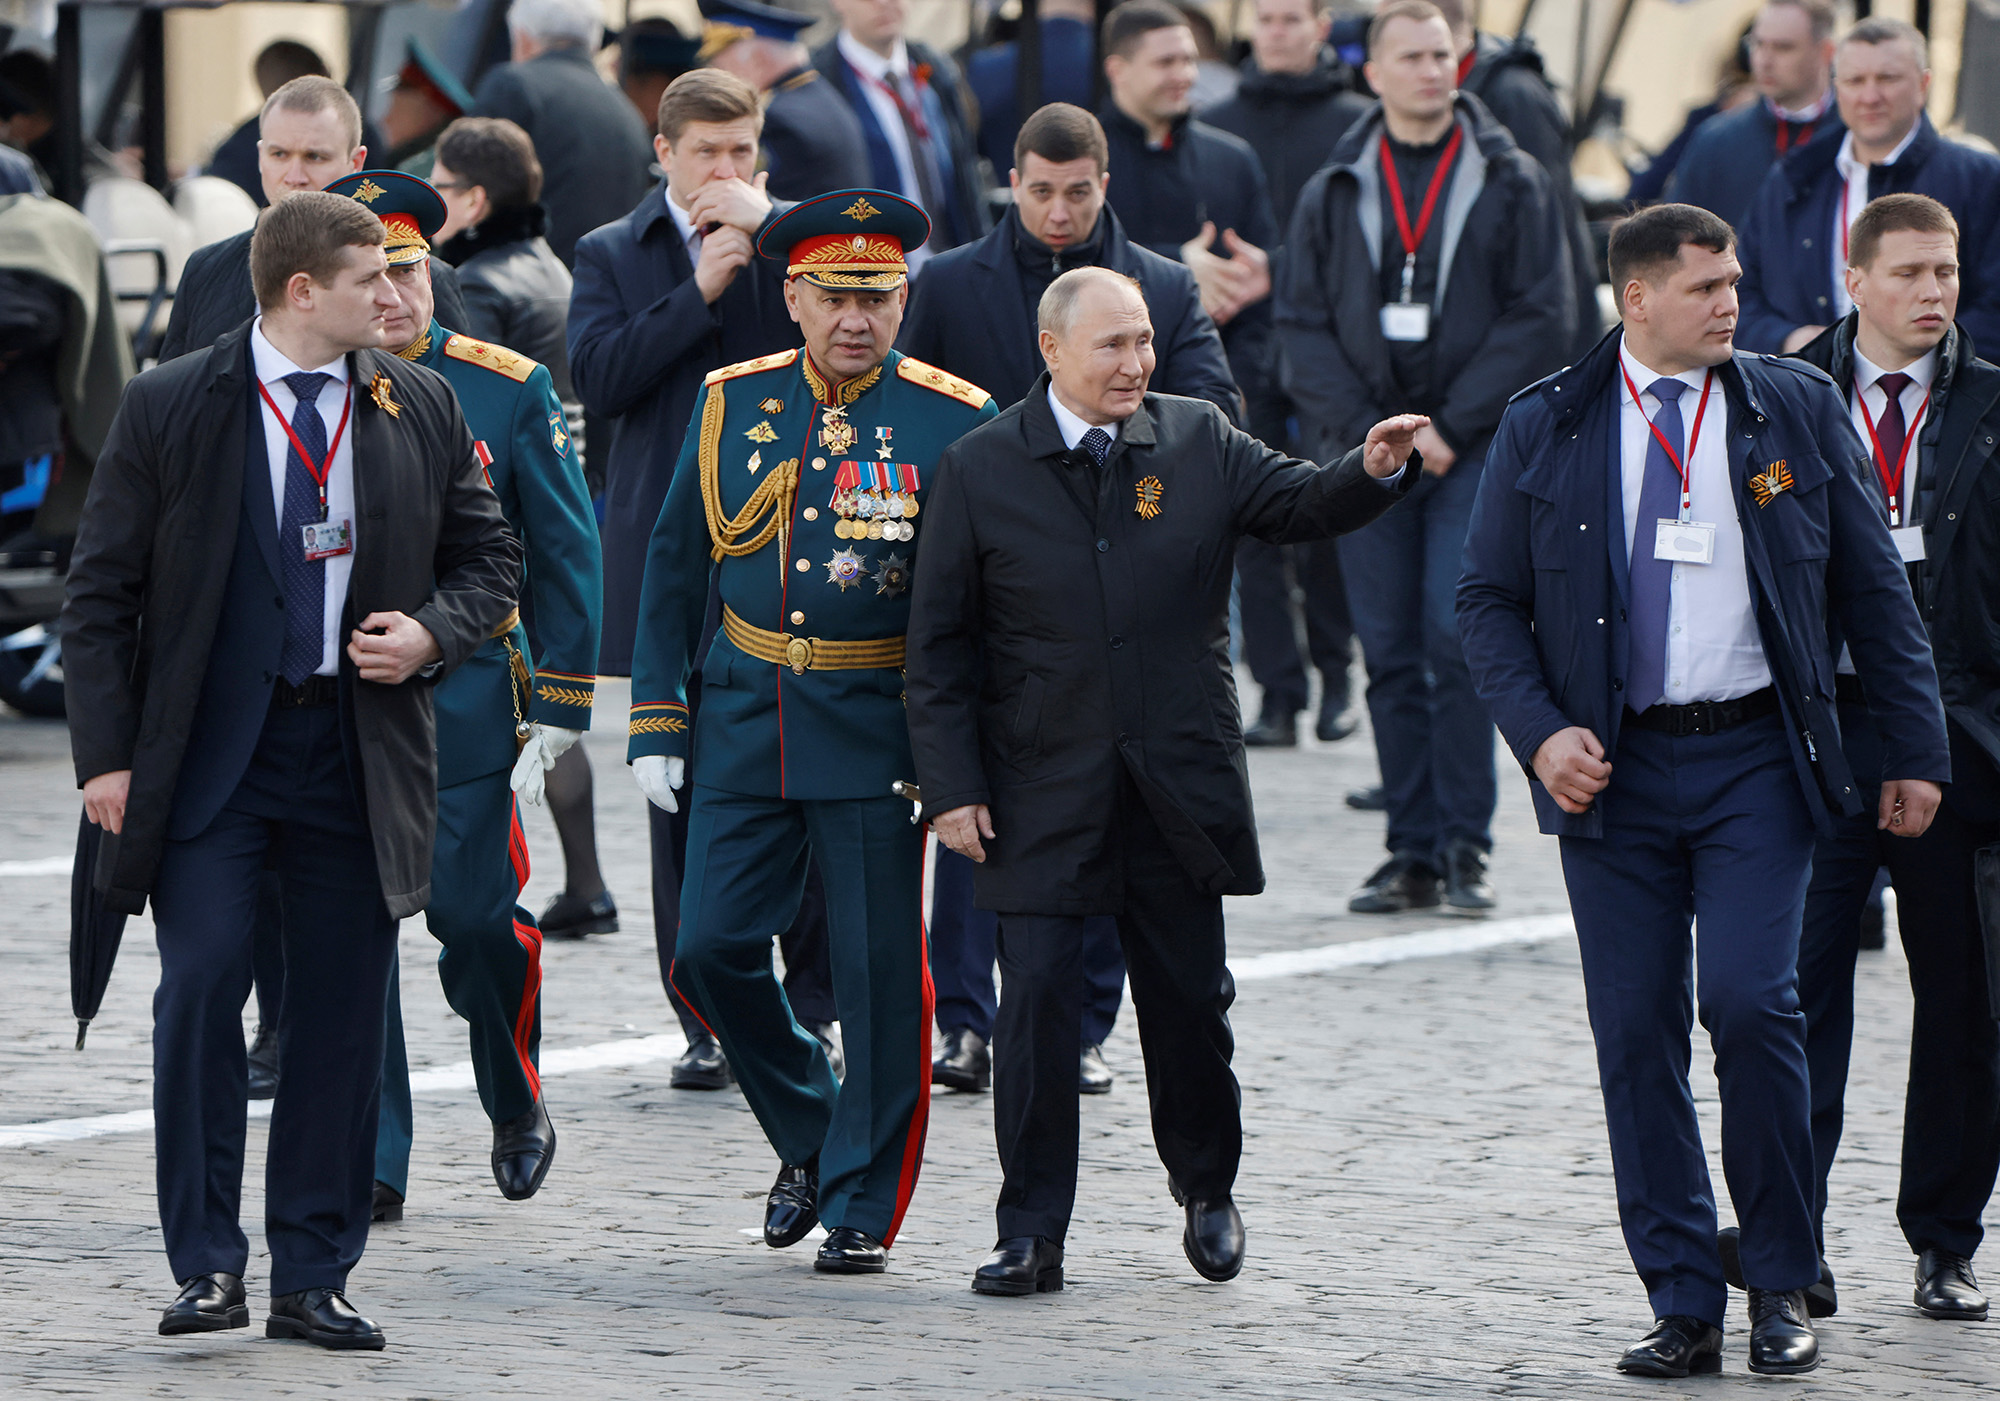 Συμβούλιο Ασφαλείας-Ρωσία: Σύσκεψη Πούτιν με επιτελείς  για την παρέλαση της «Ημέρας  της Νίκης»